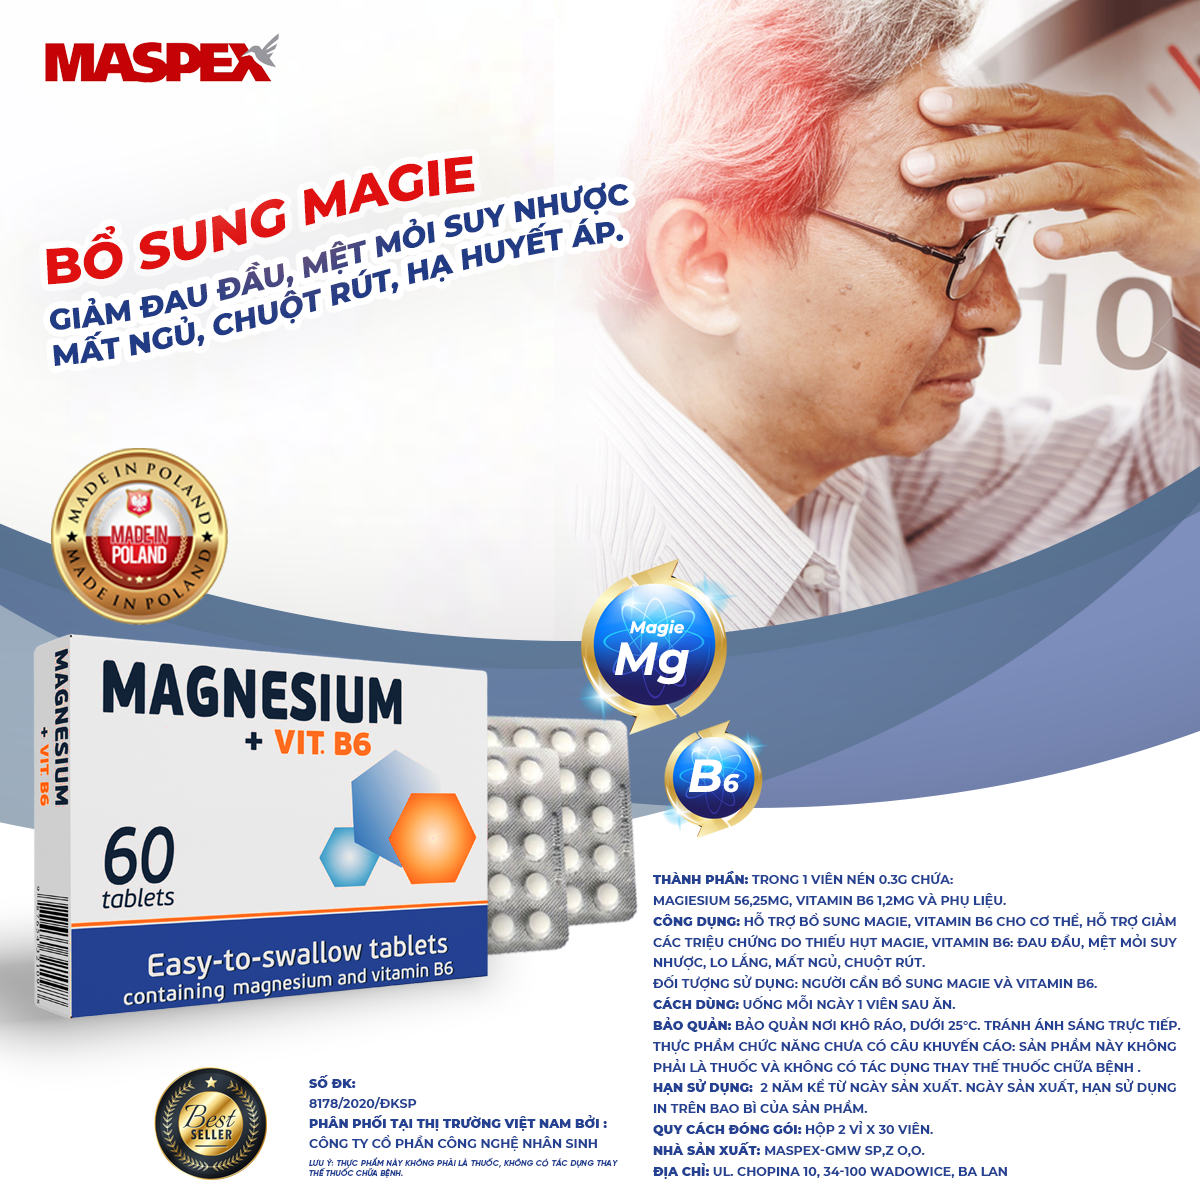 Thực Phẩm Chức Năng Viên  Uống Bổ Sung Magie, Vitamin B6 Magnesium + Vit.B6 MASPEX Hỗ Trợ Giảm Đau Đầu Mệt Mỏi Suy Nhược  Hộp 2 hộp x 60 Viên